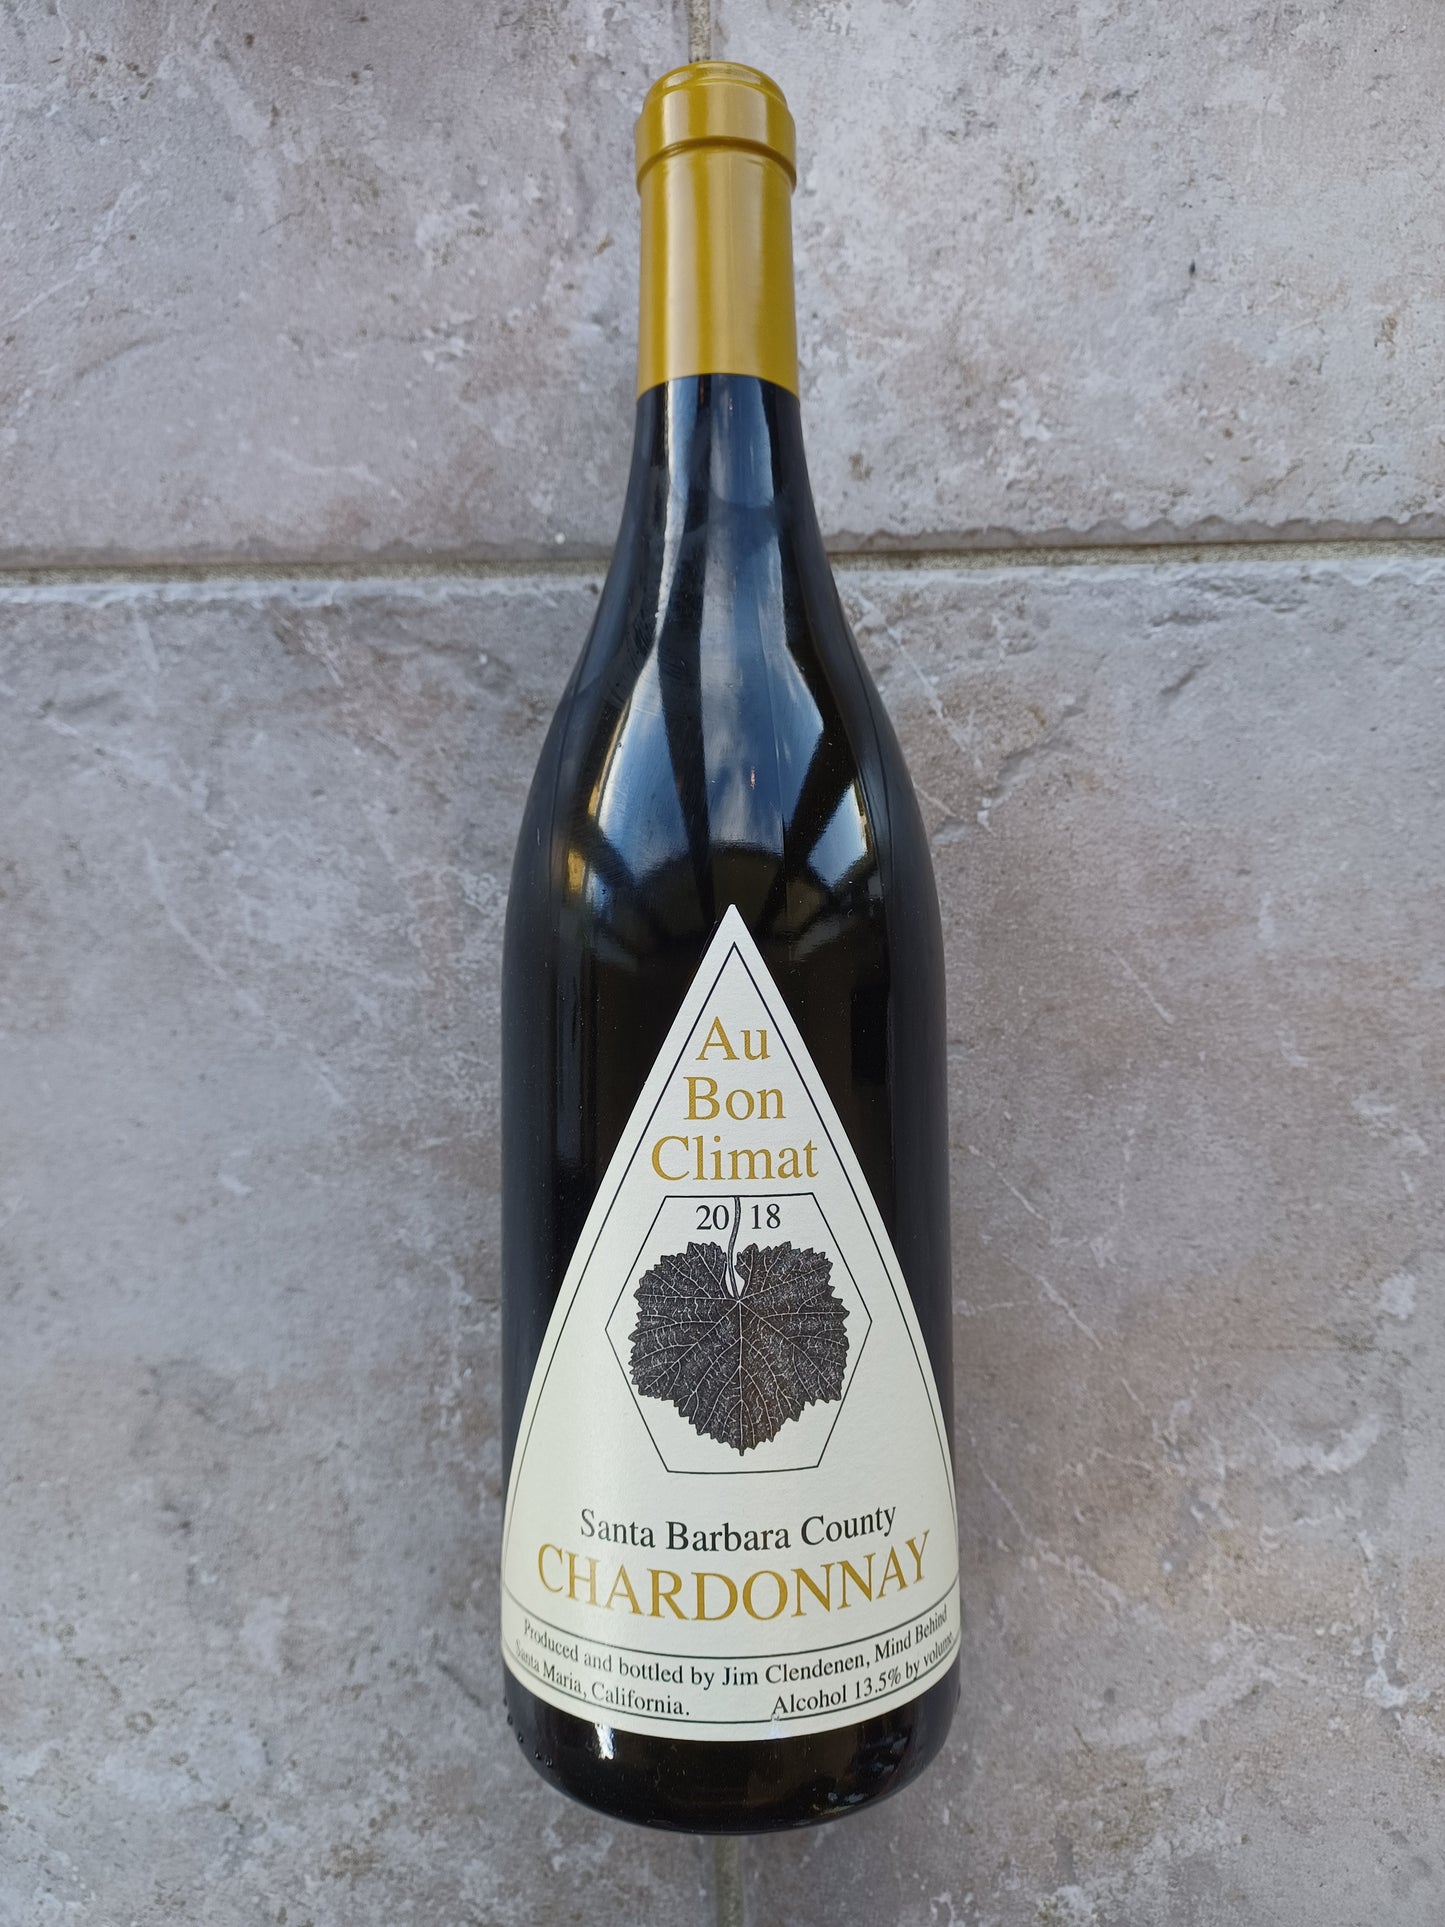 Au Bon Climat Santa Barbara County Chardonnay